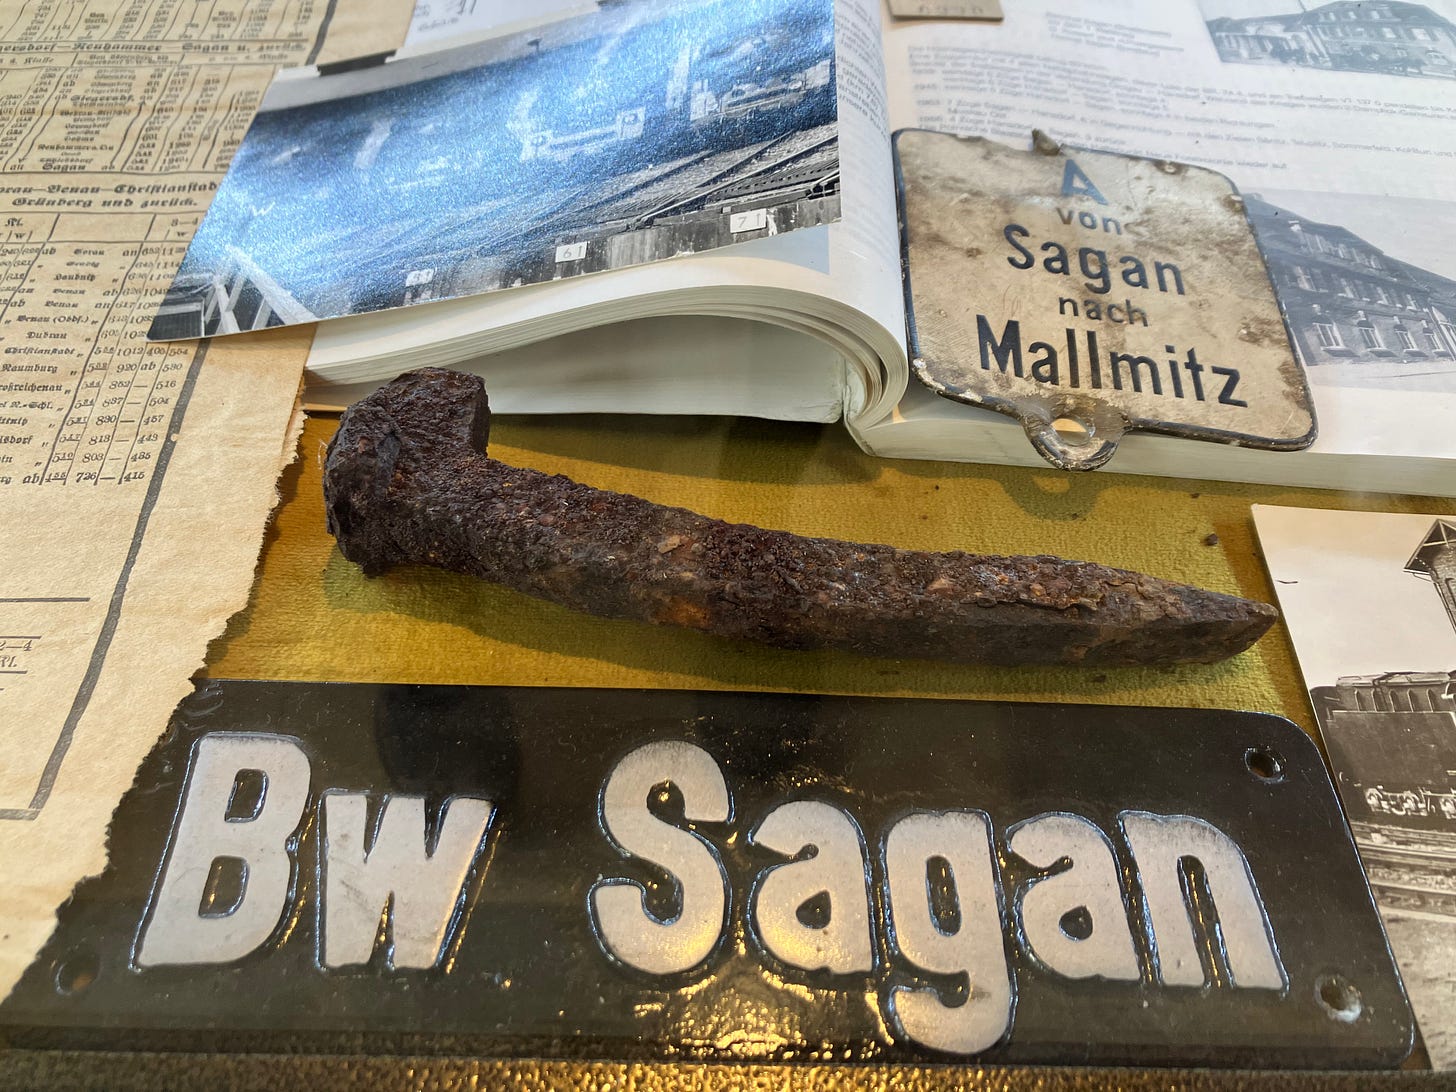 An old Sagan train station sign